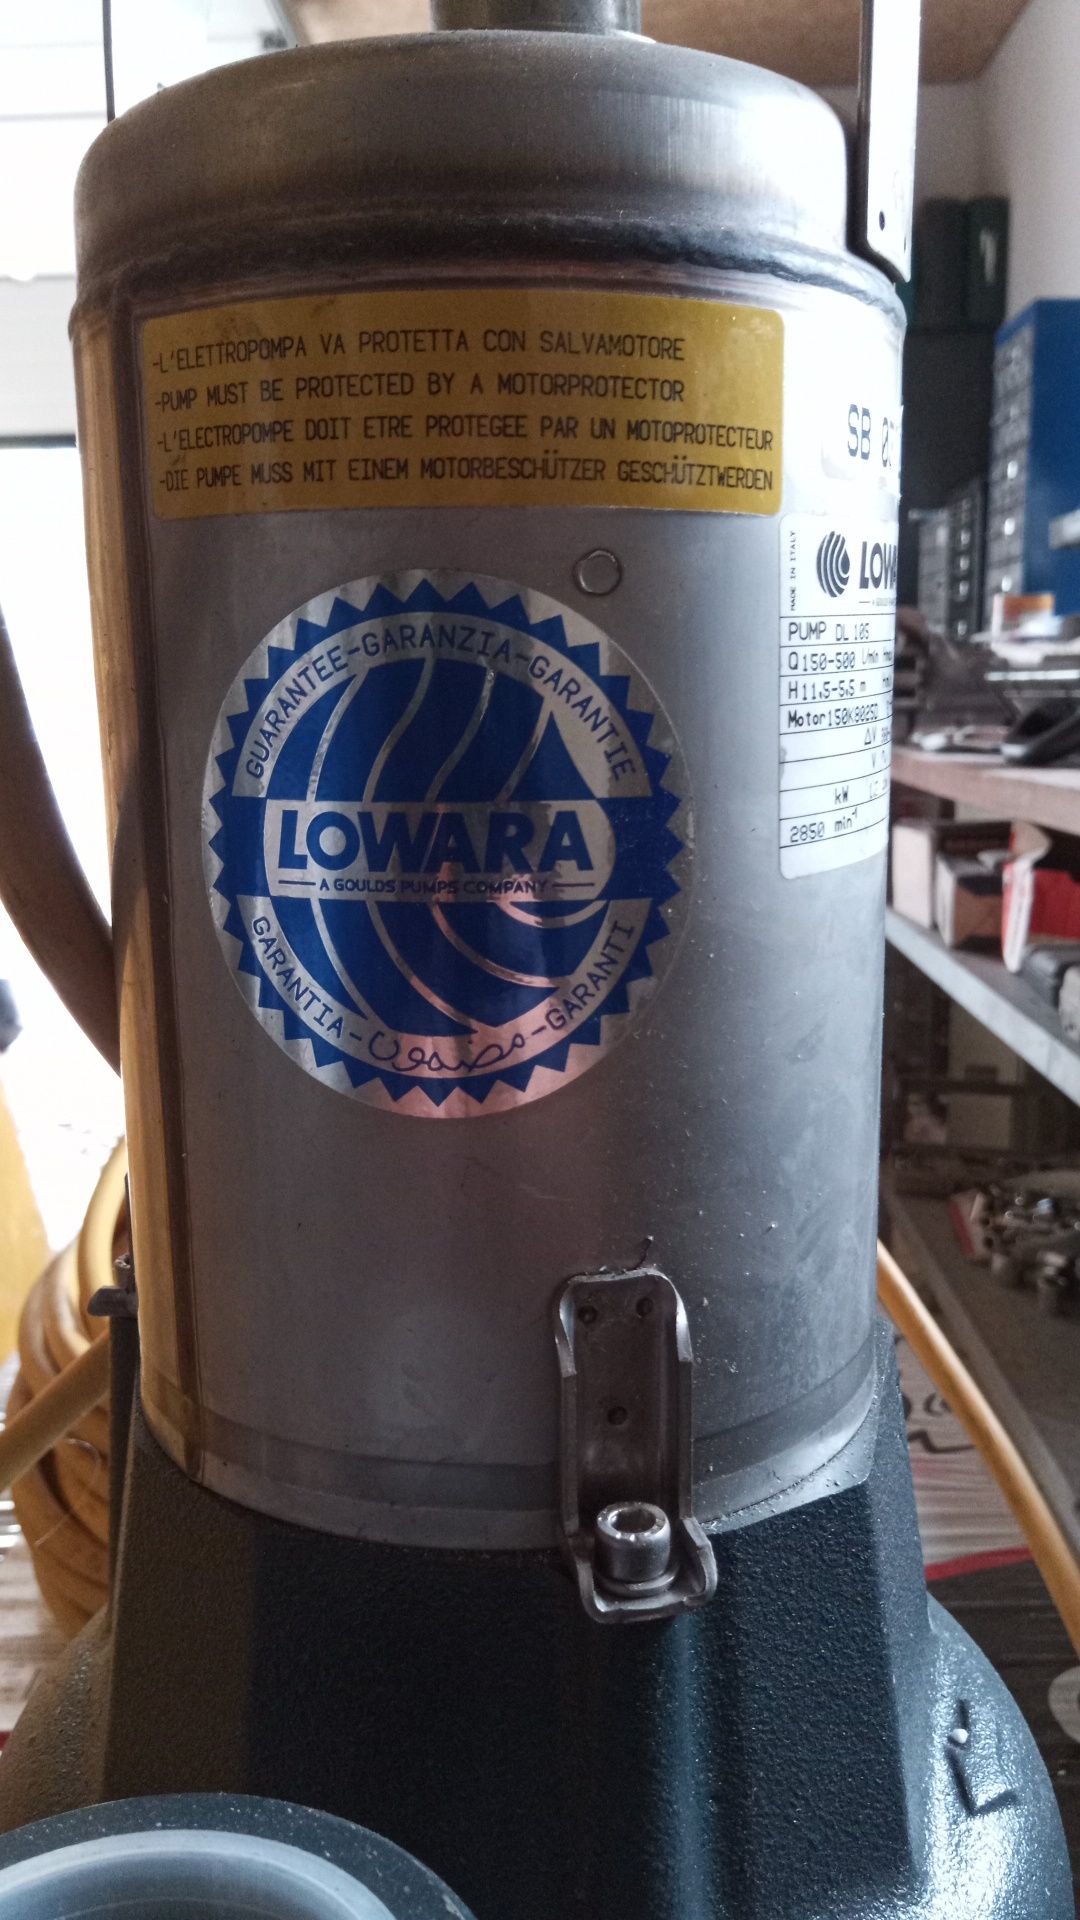 Pompa Lowara DL105, trójfazowa.Profesjonalna. Brudna woda, odwodnienia